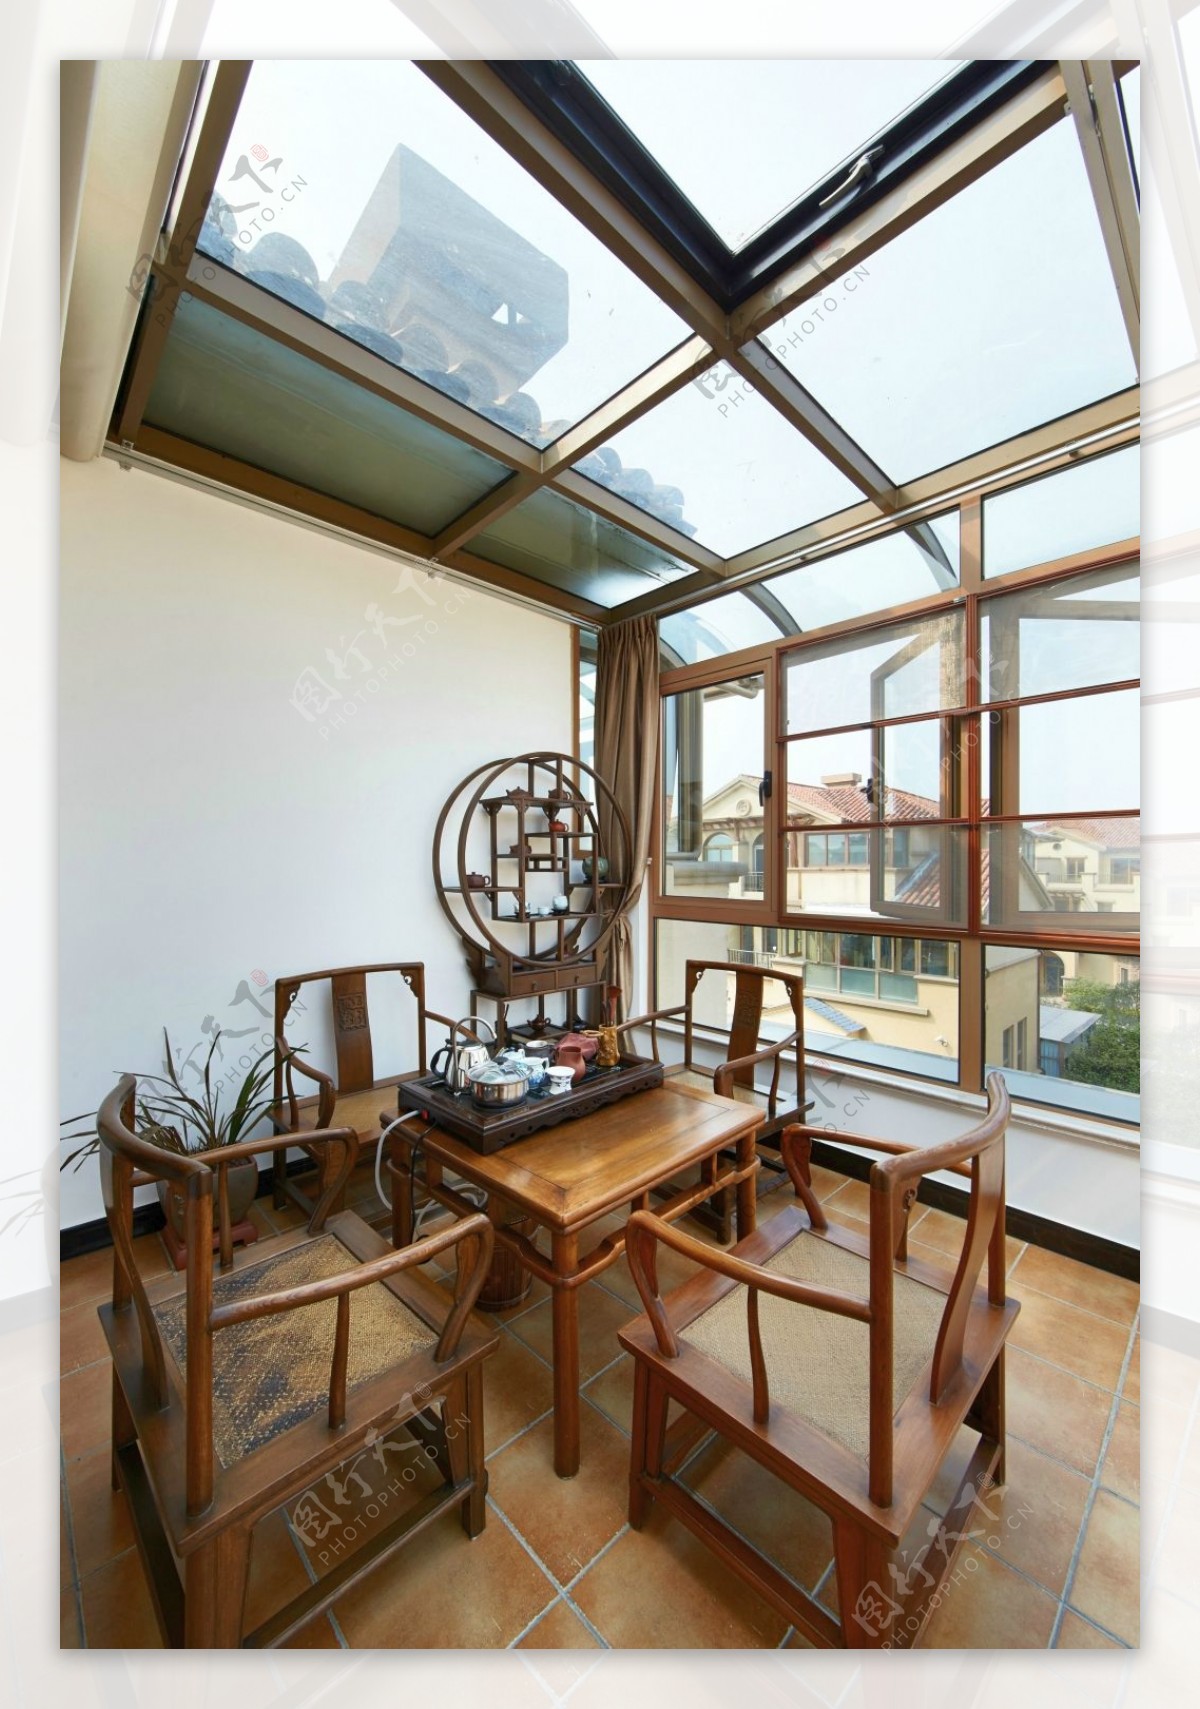 朴素风室内设计会客室博物架窗帘装修效果图JPG源文件